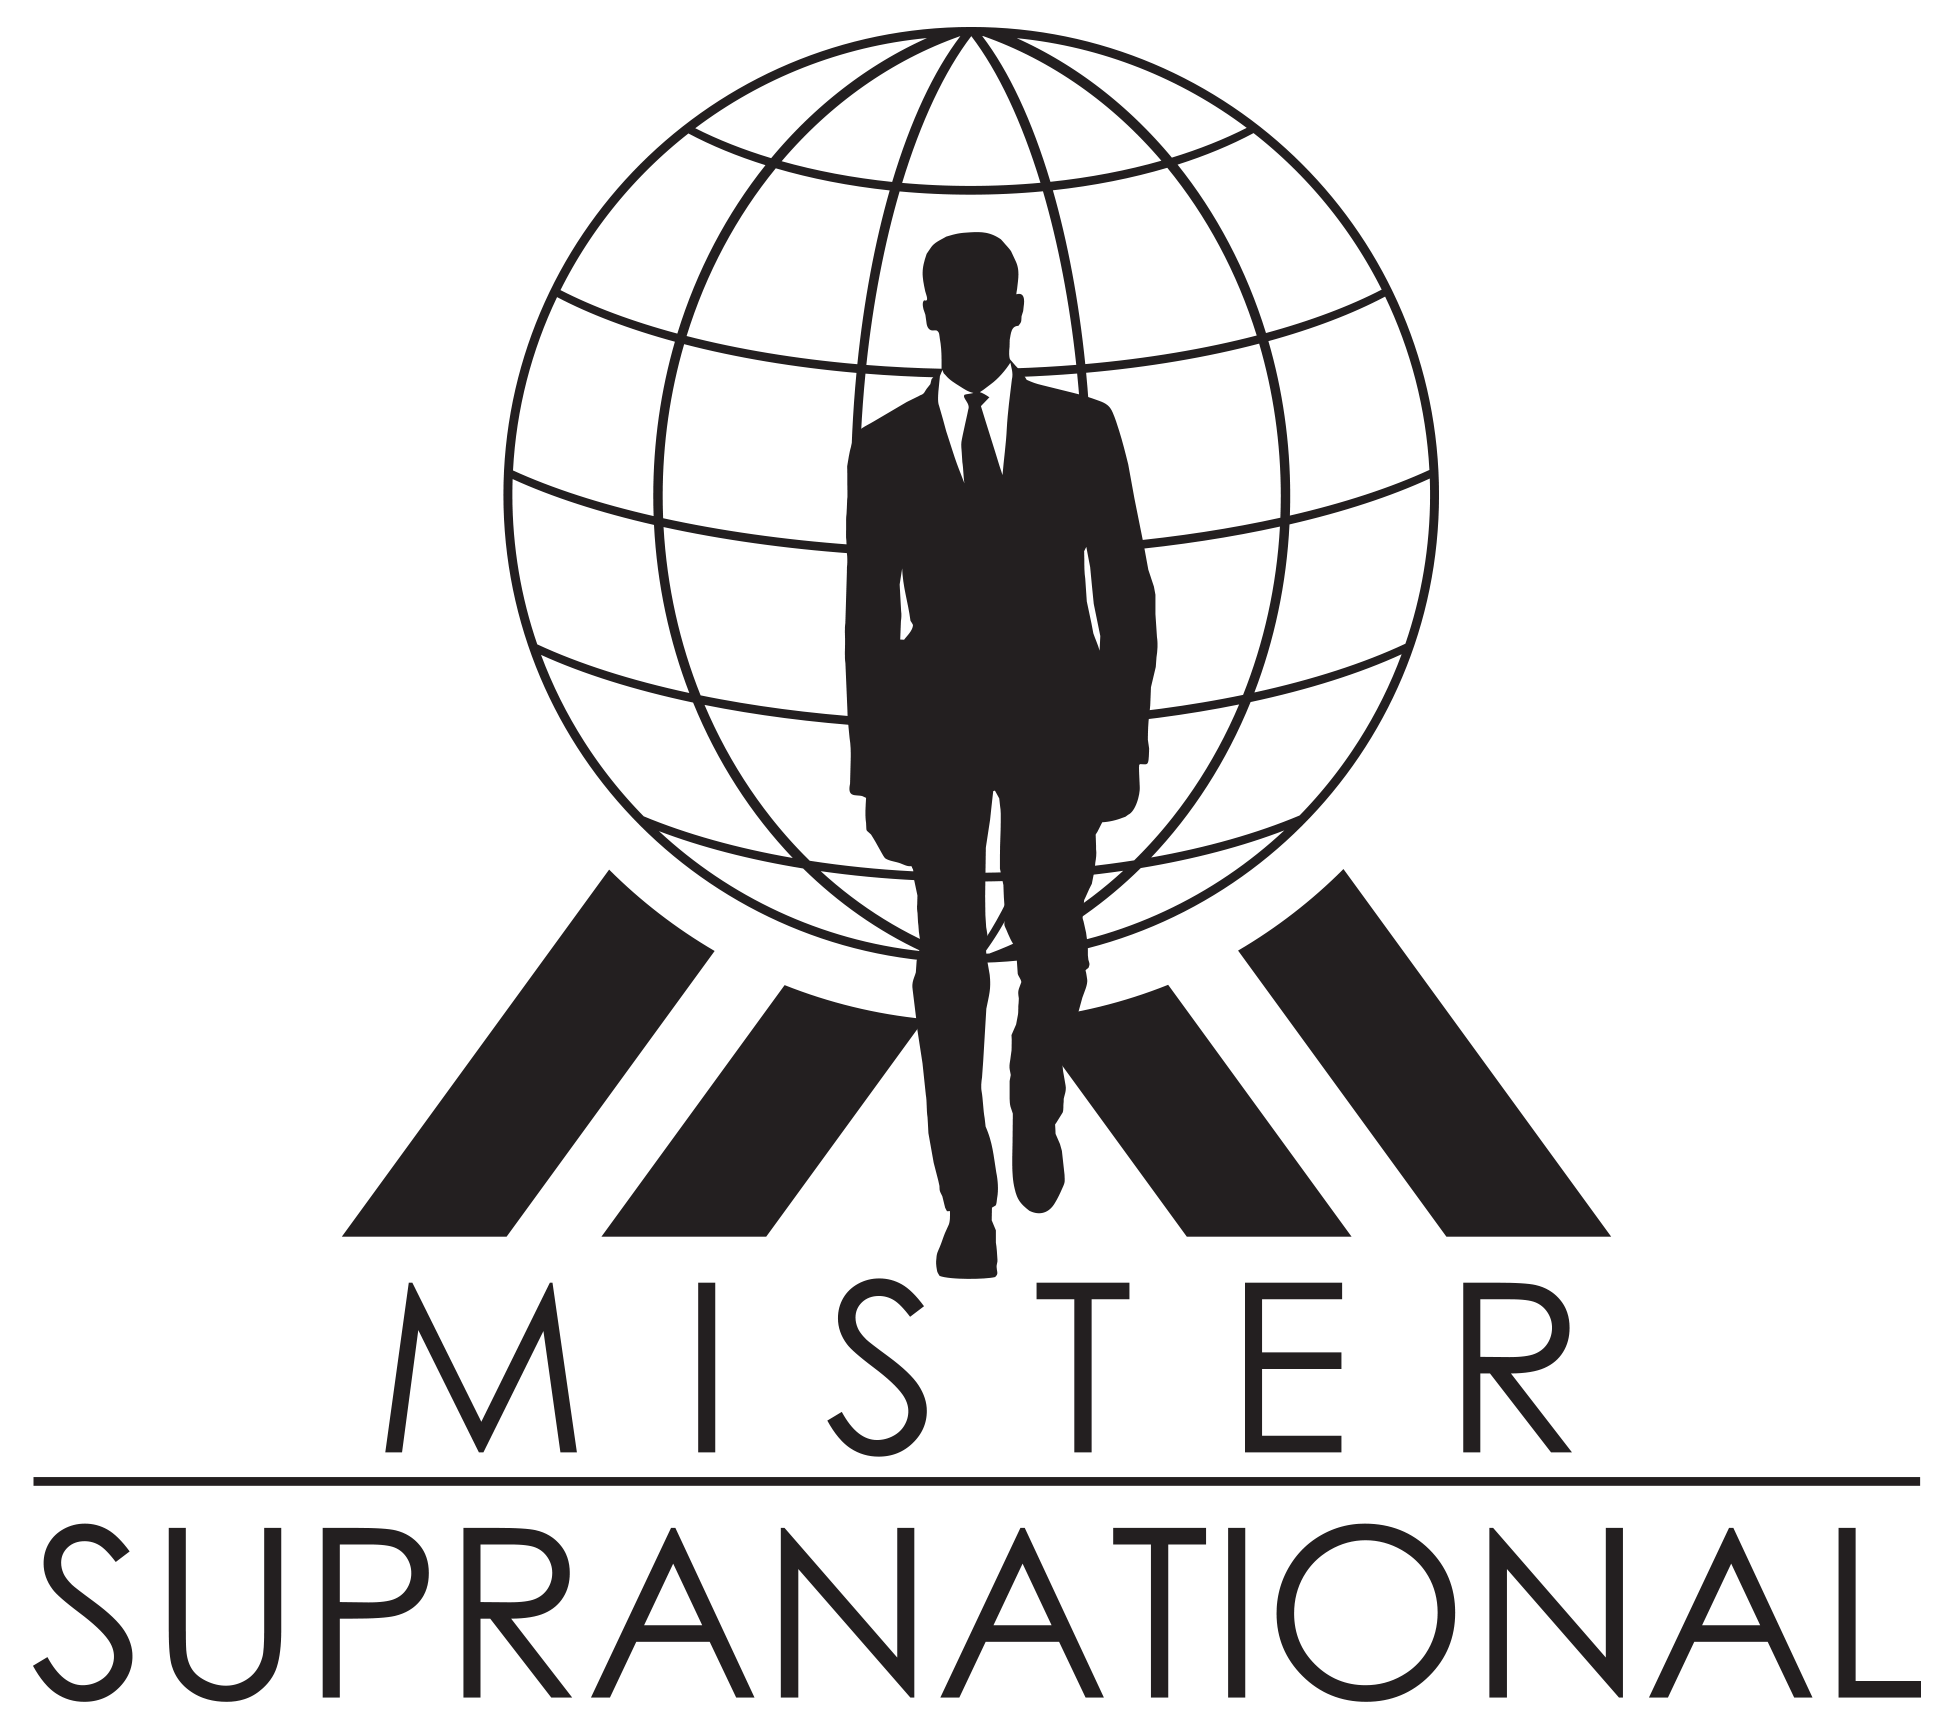 Accede al apartado Mister Supranational de la web